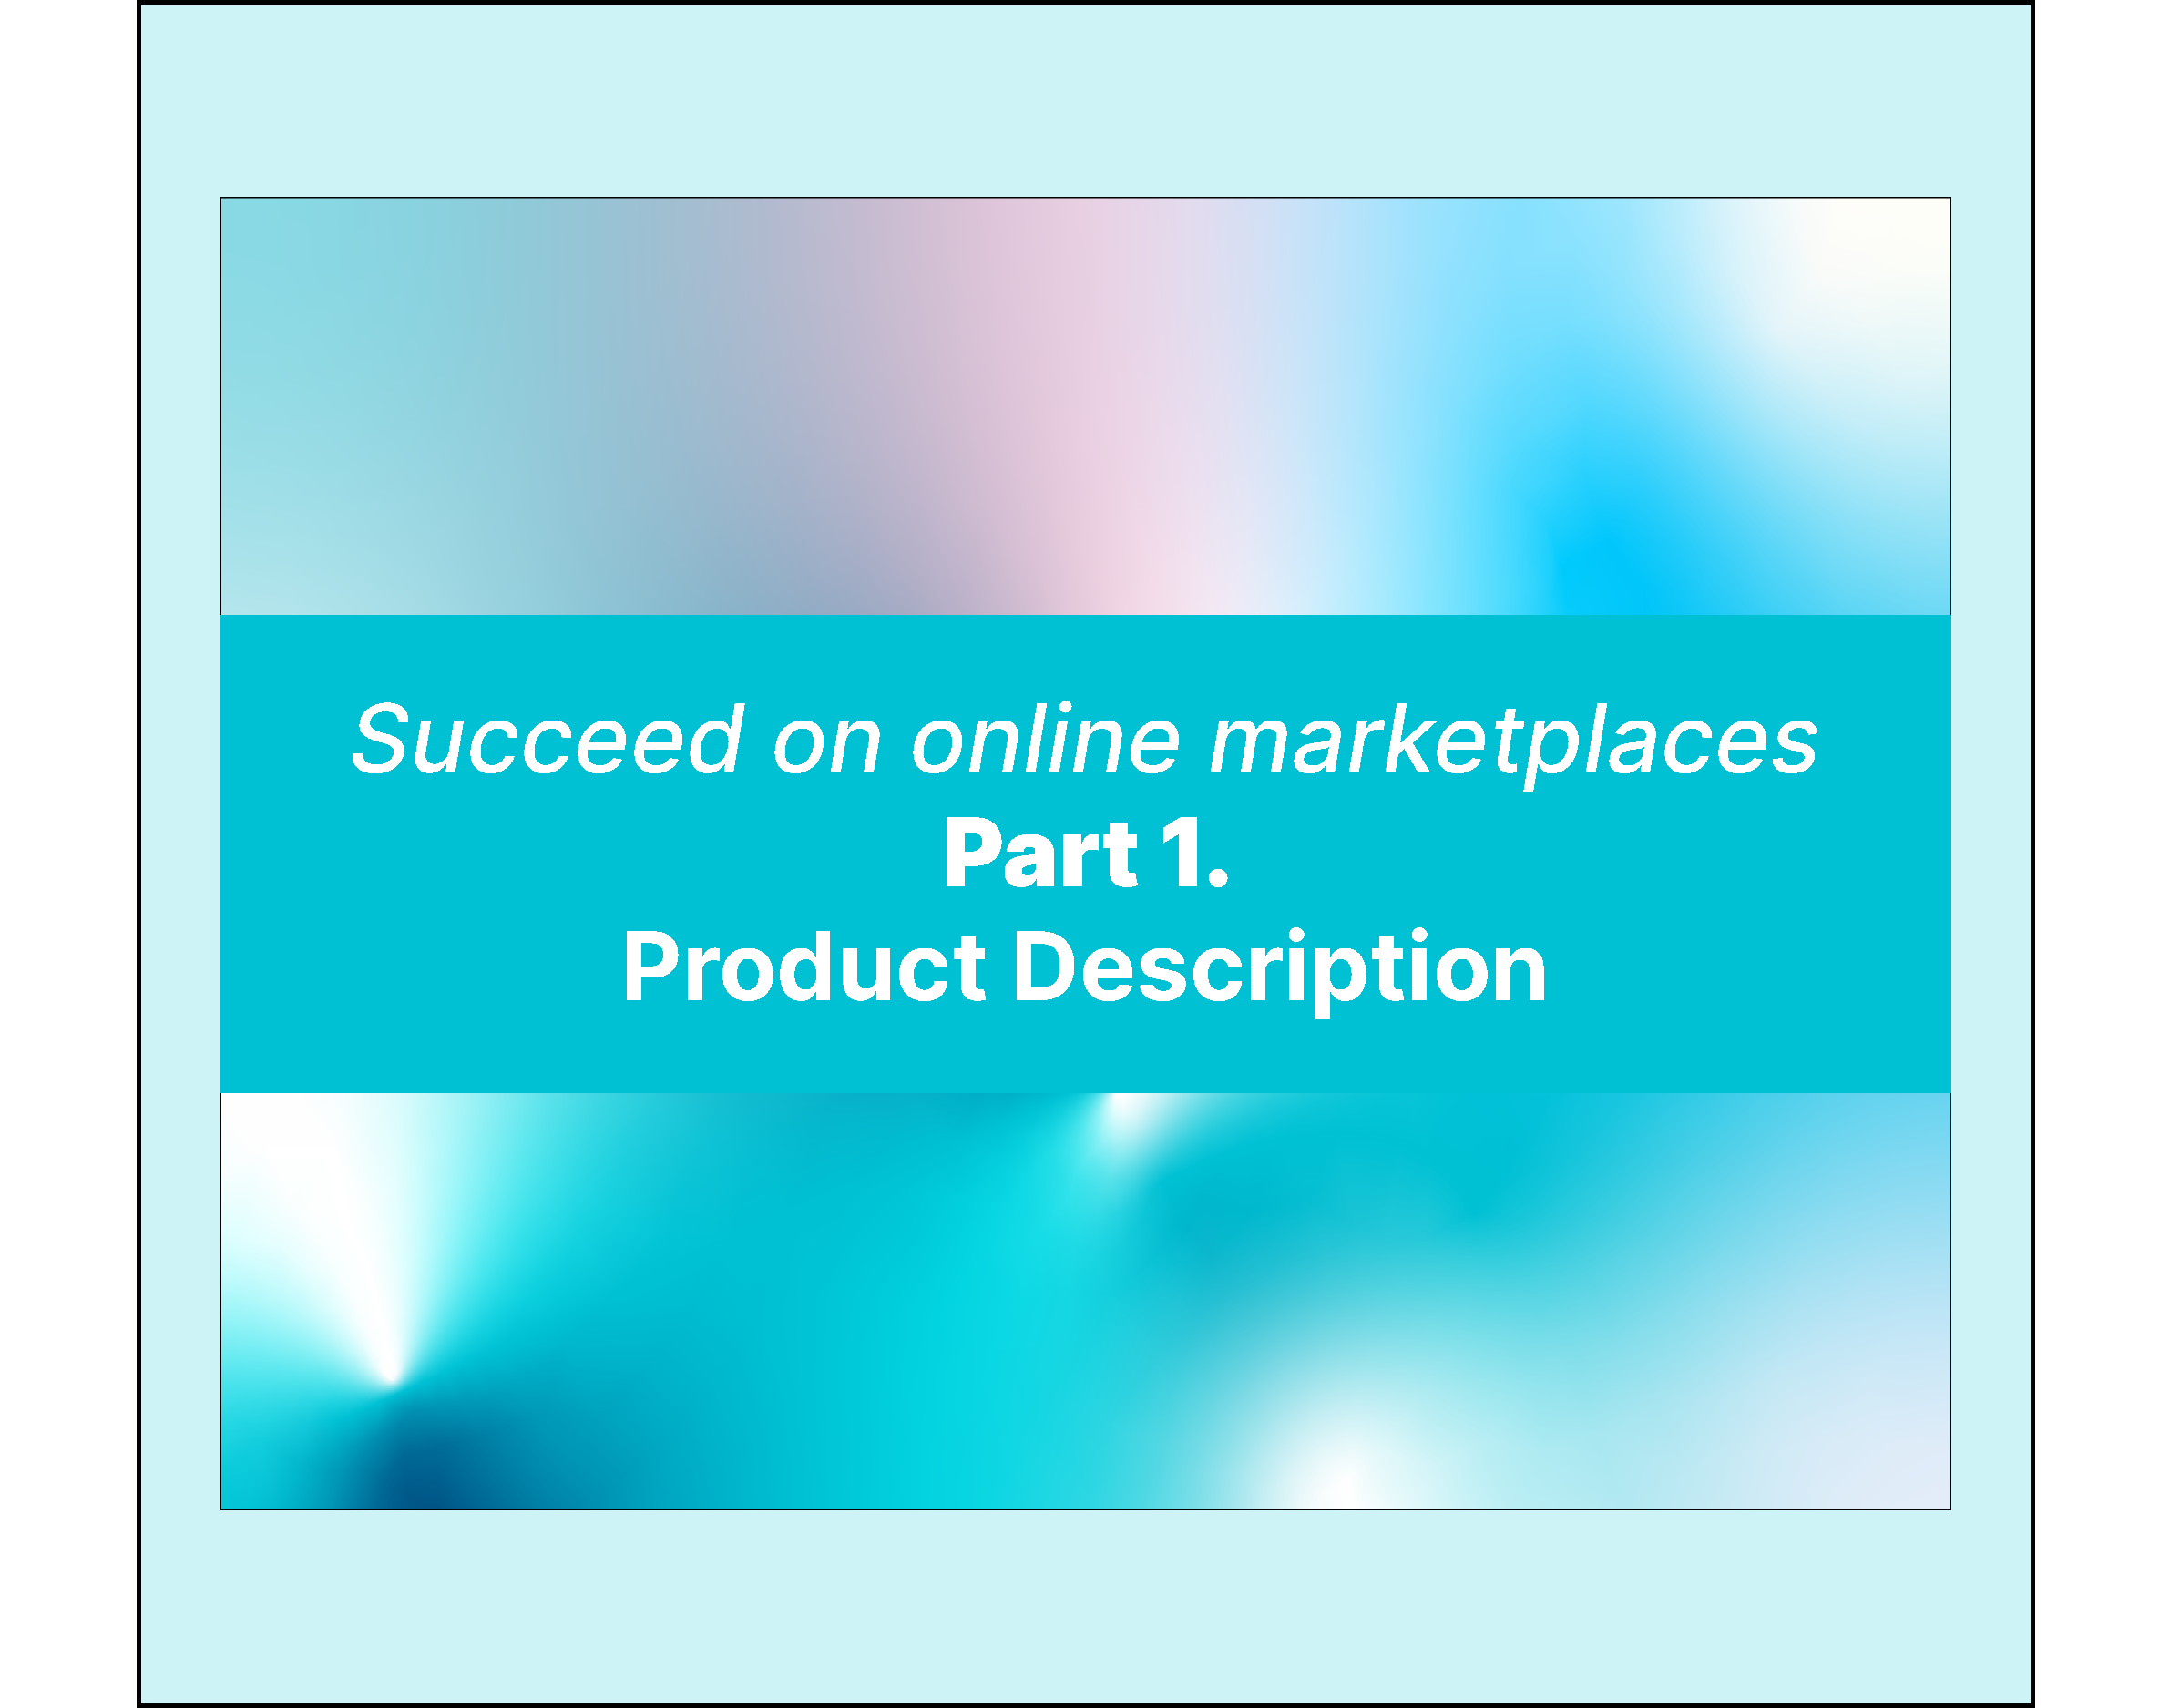 Succeed on online marketplaces - Part 1. Product Description